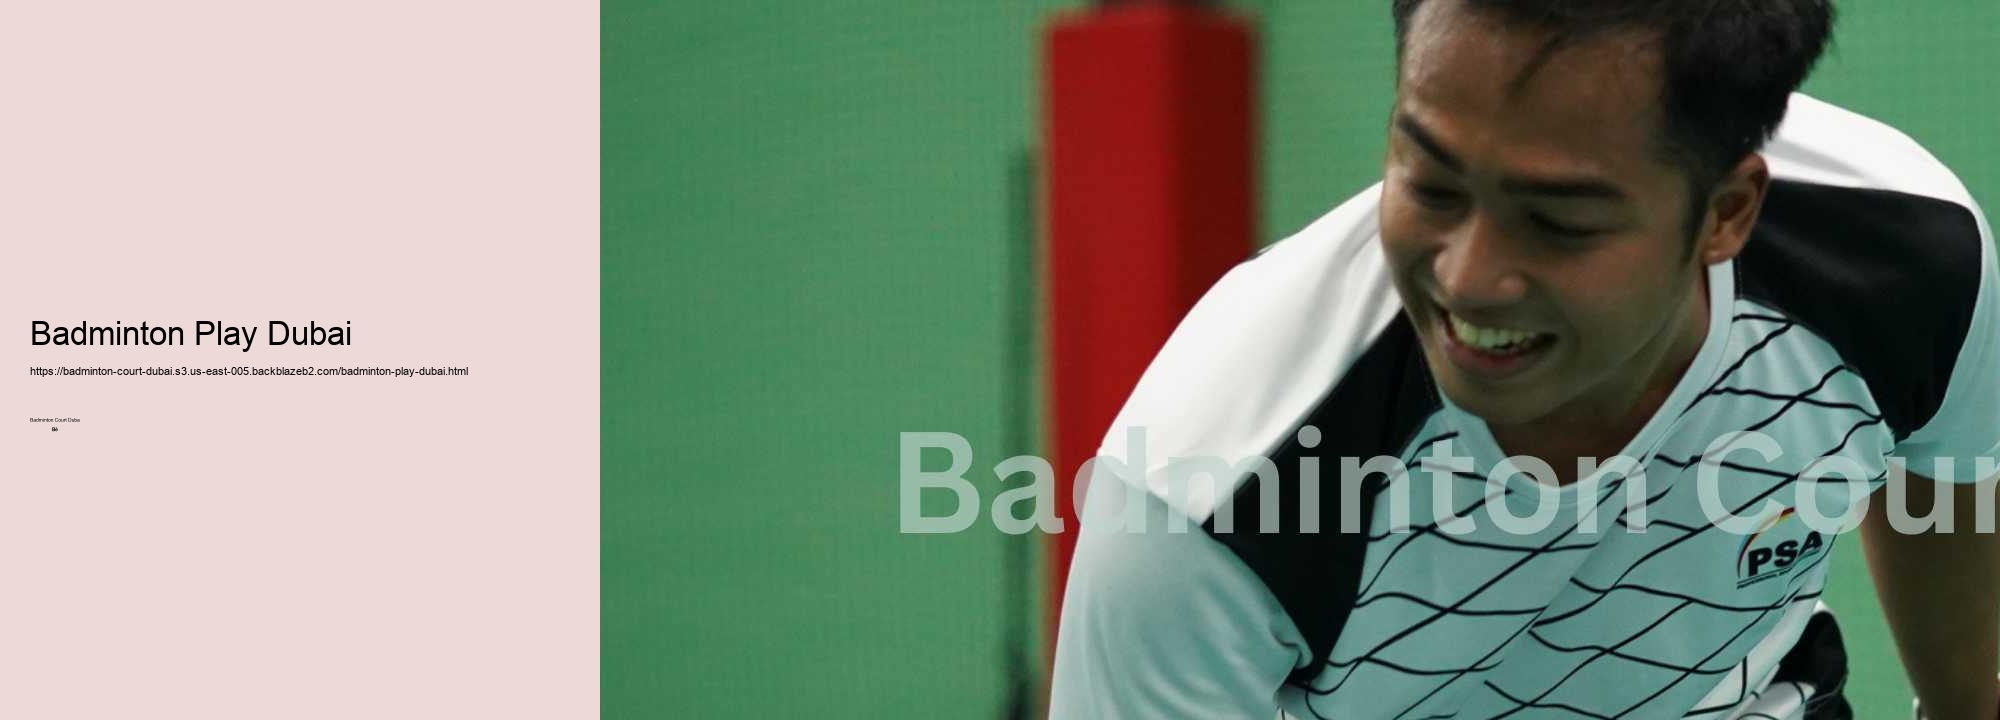 Badminton Play Dubai